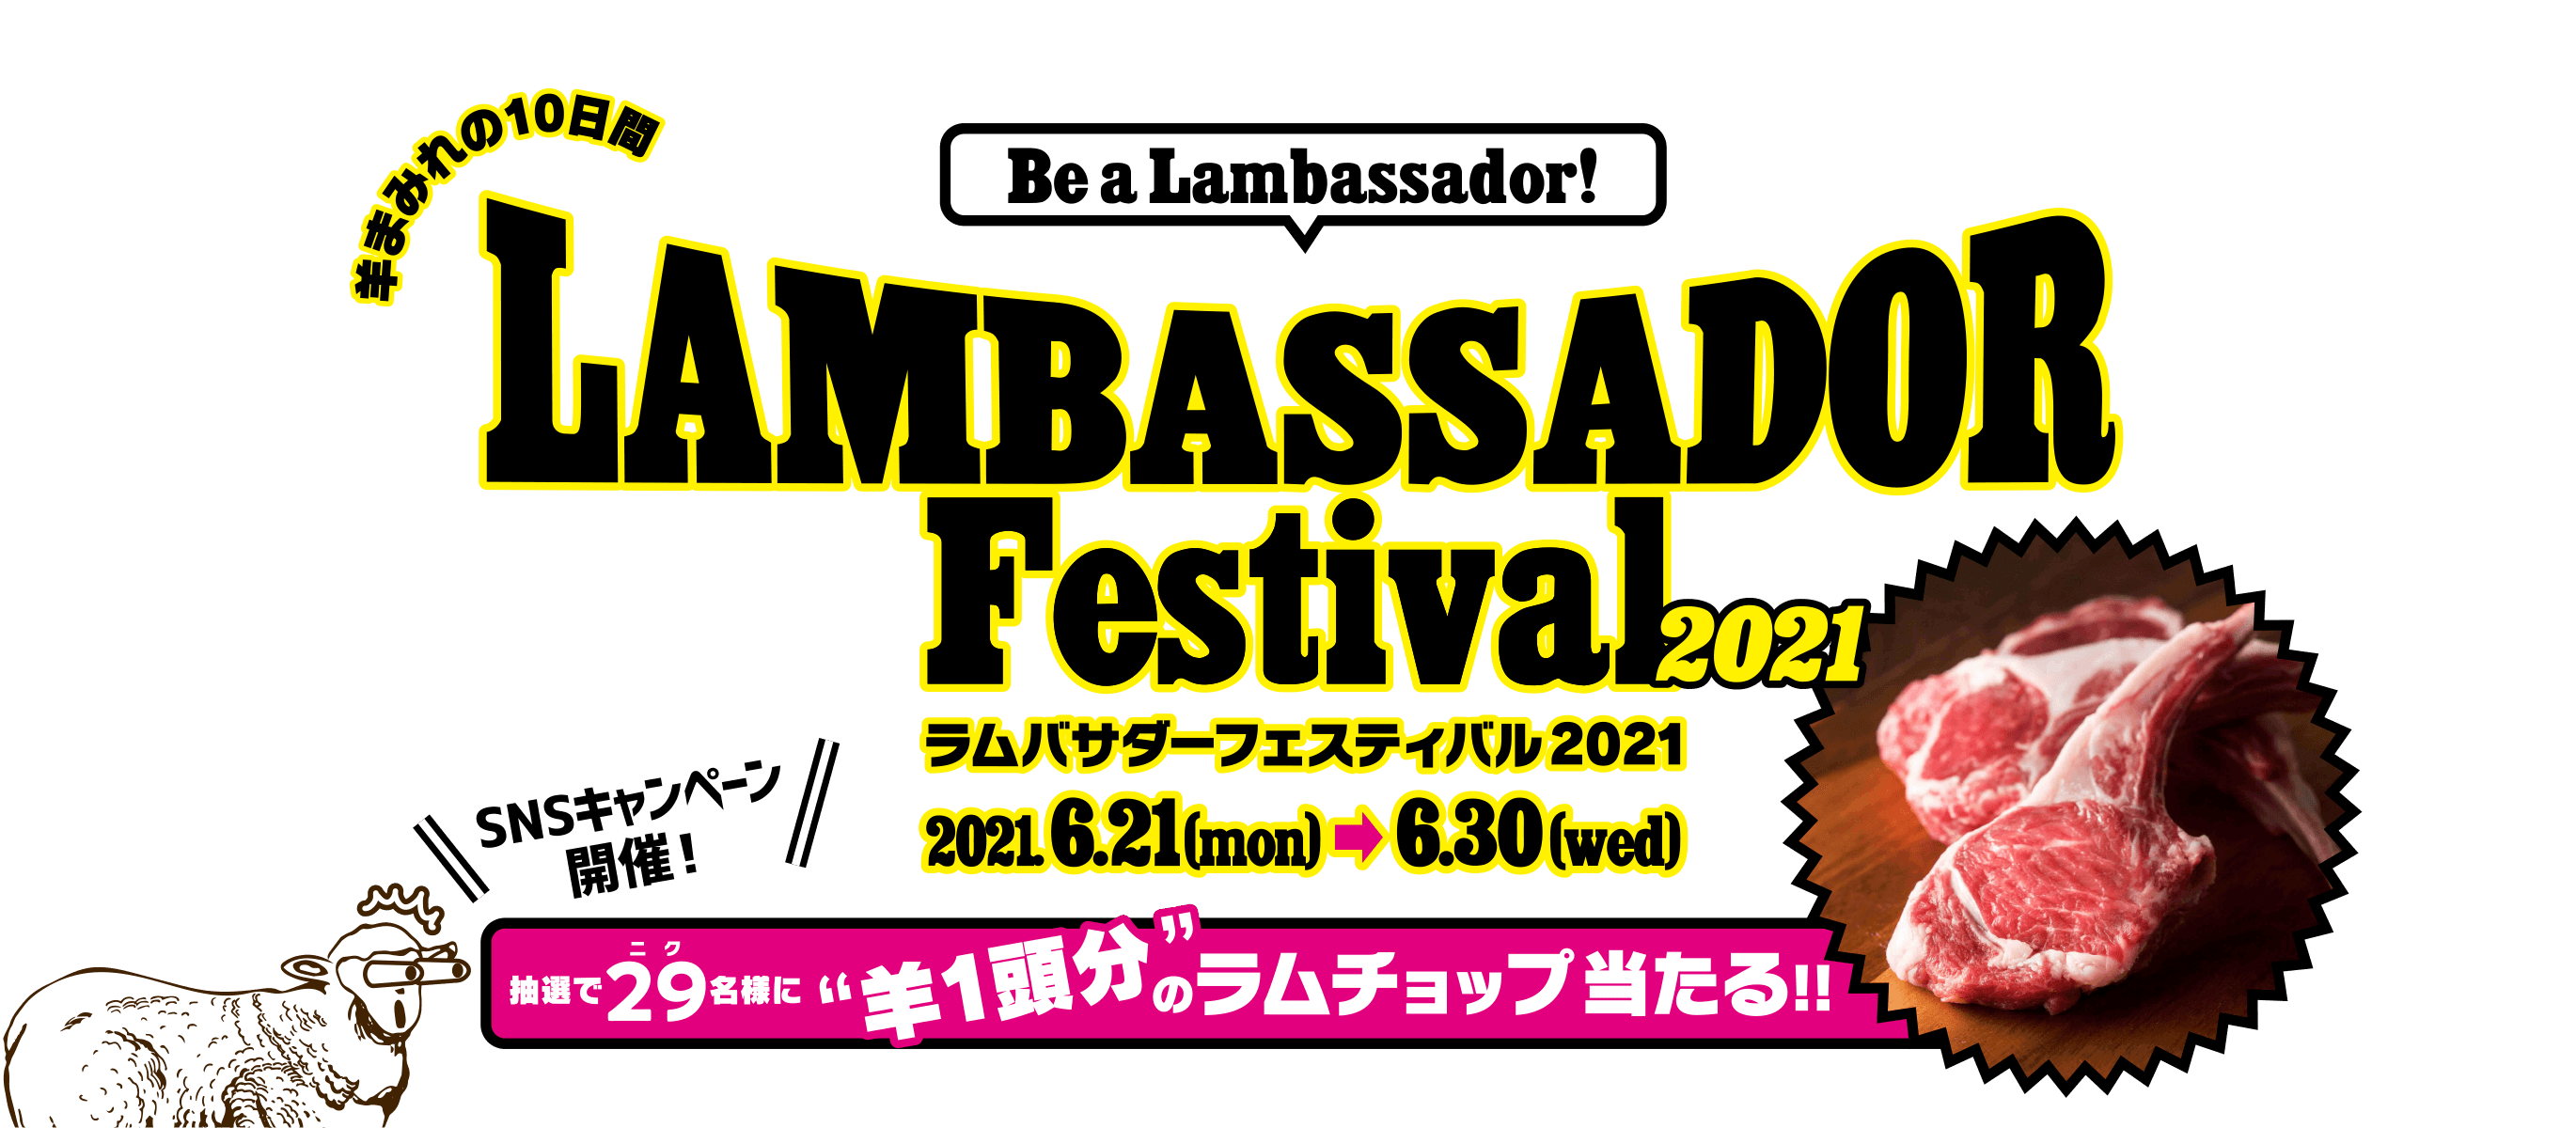 ラムバサダーフェスティバル2021 合言葉は、「Be a Lambassador!」